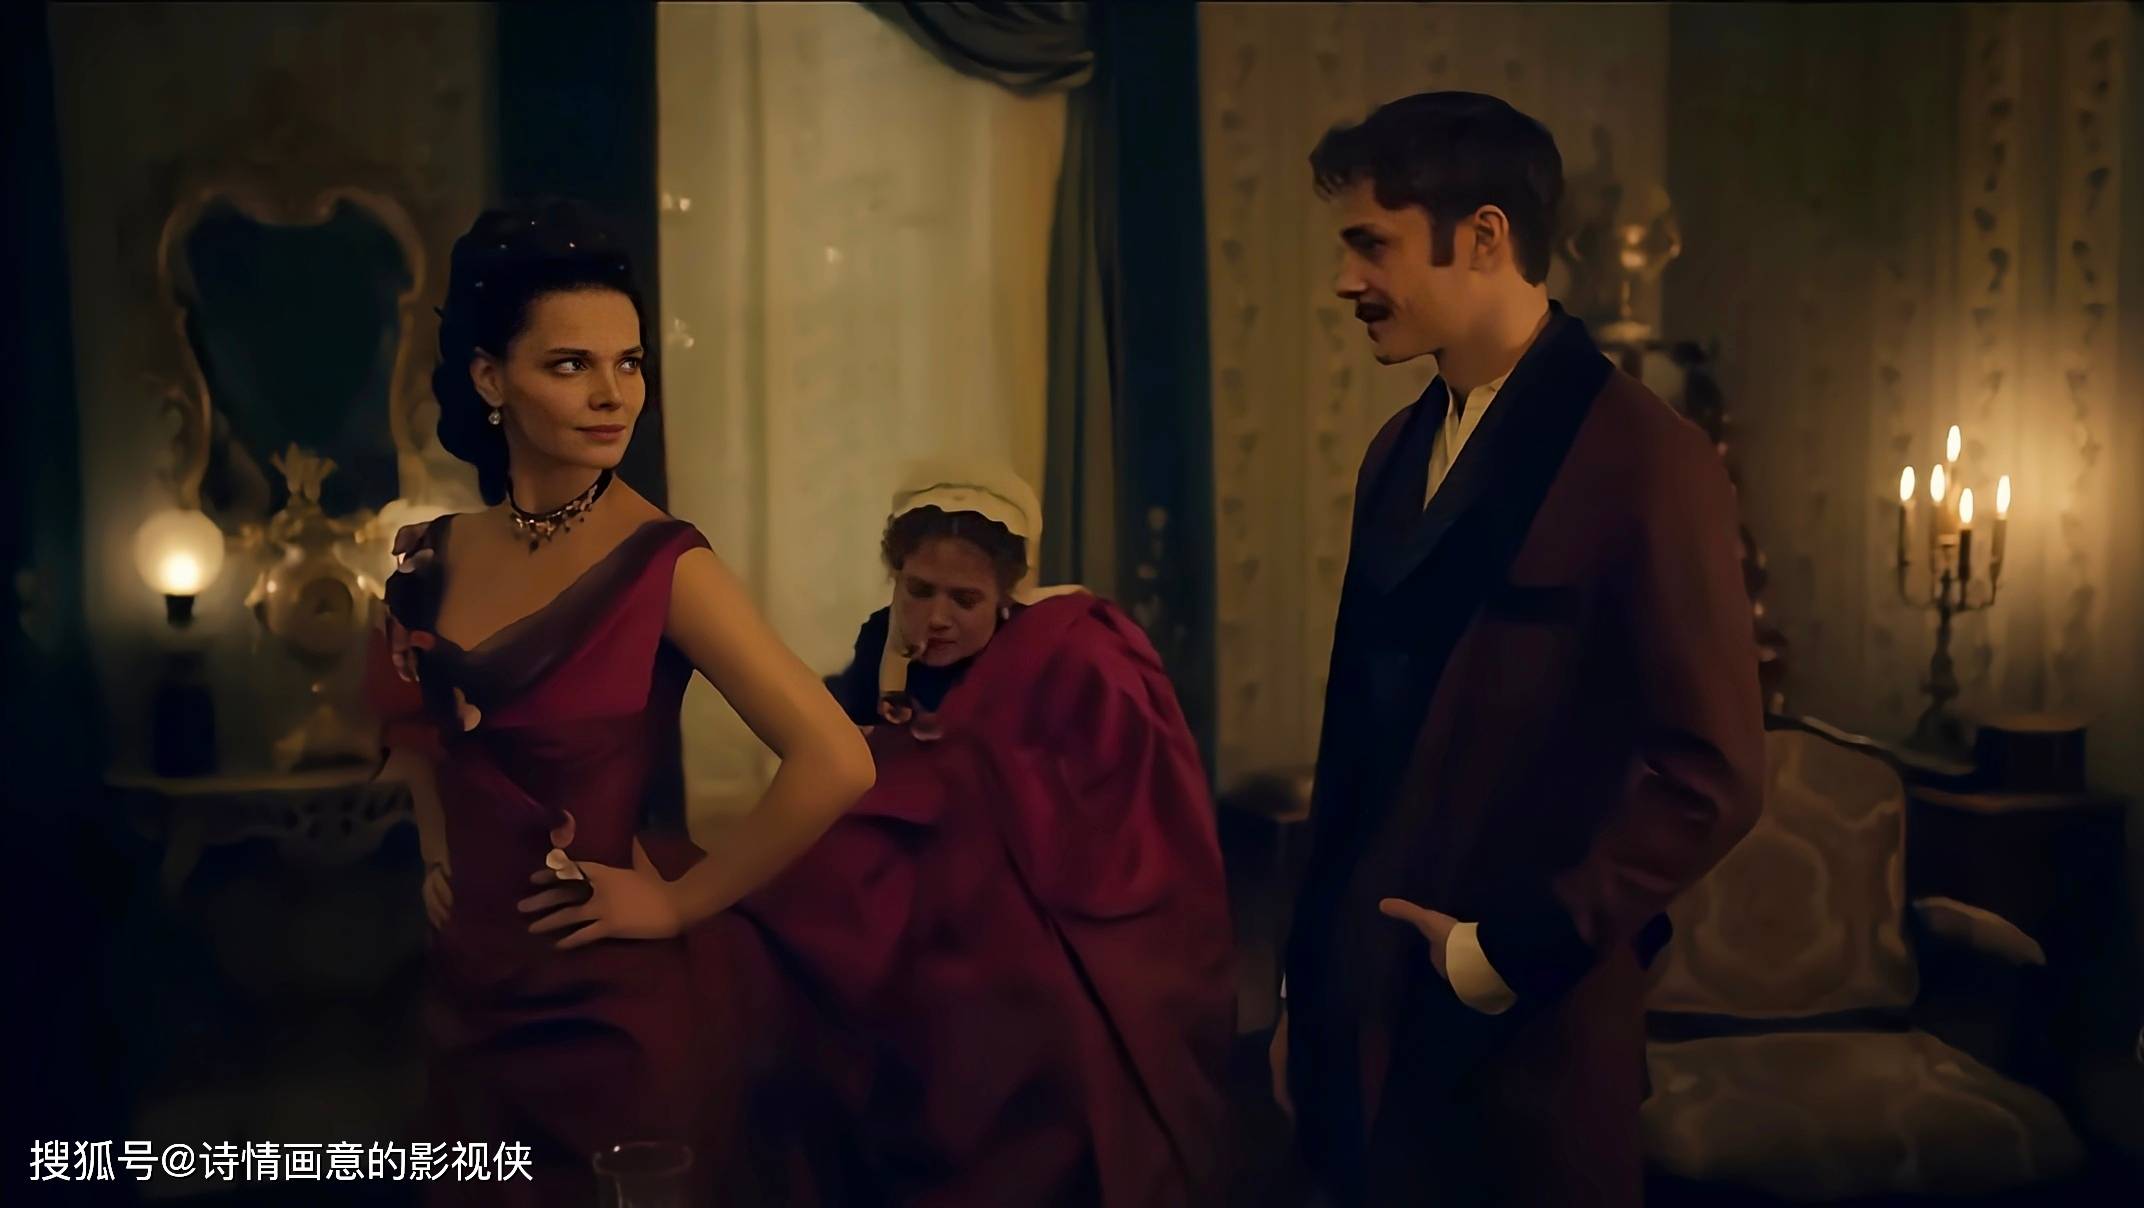 俄罗斯大尺度剧集《安娜·卡列尼娜》:贵族爱情的悲剧与道德的抉择